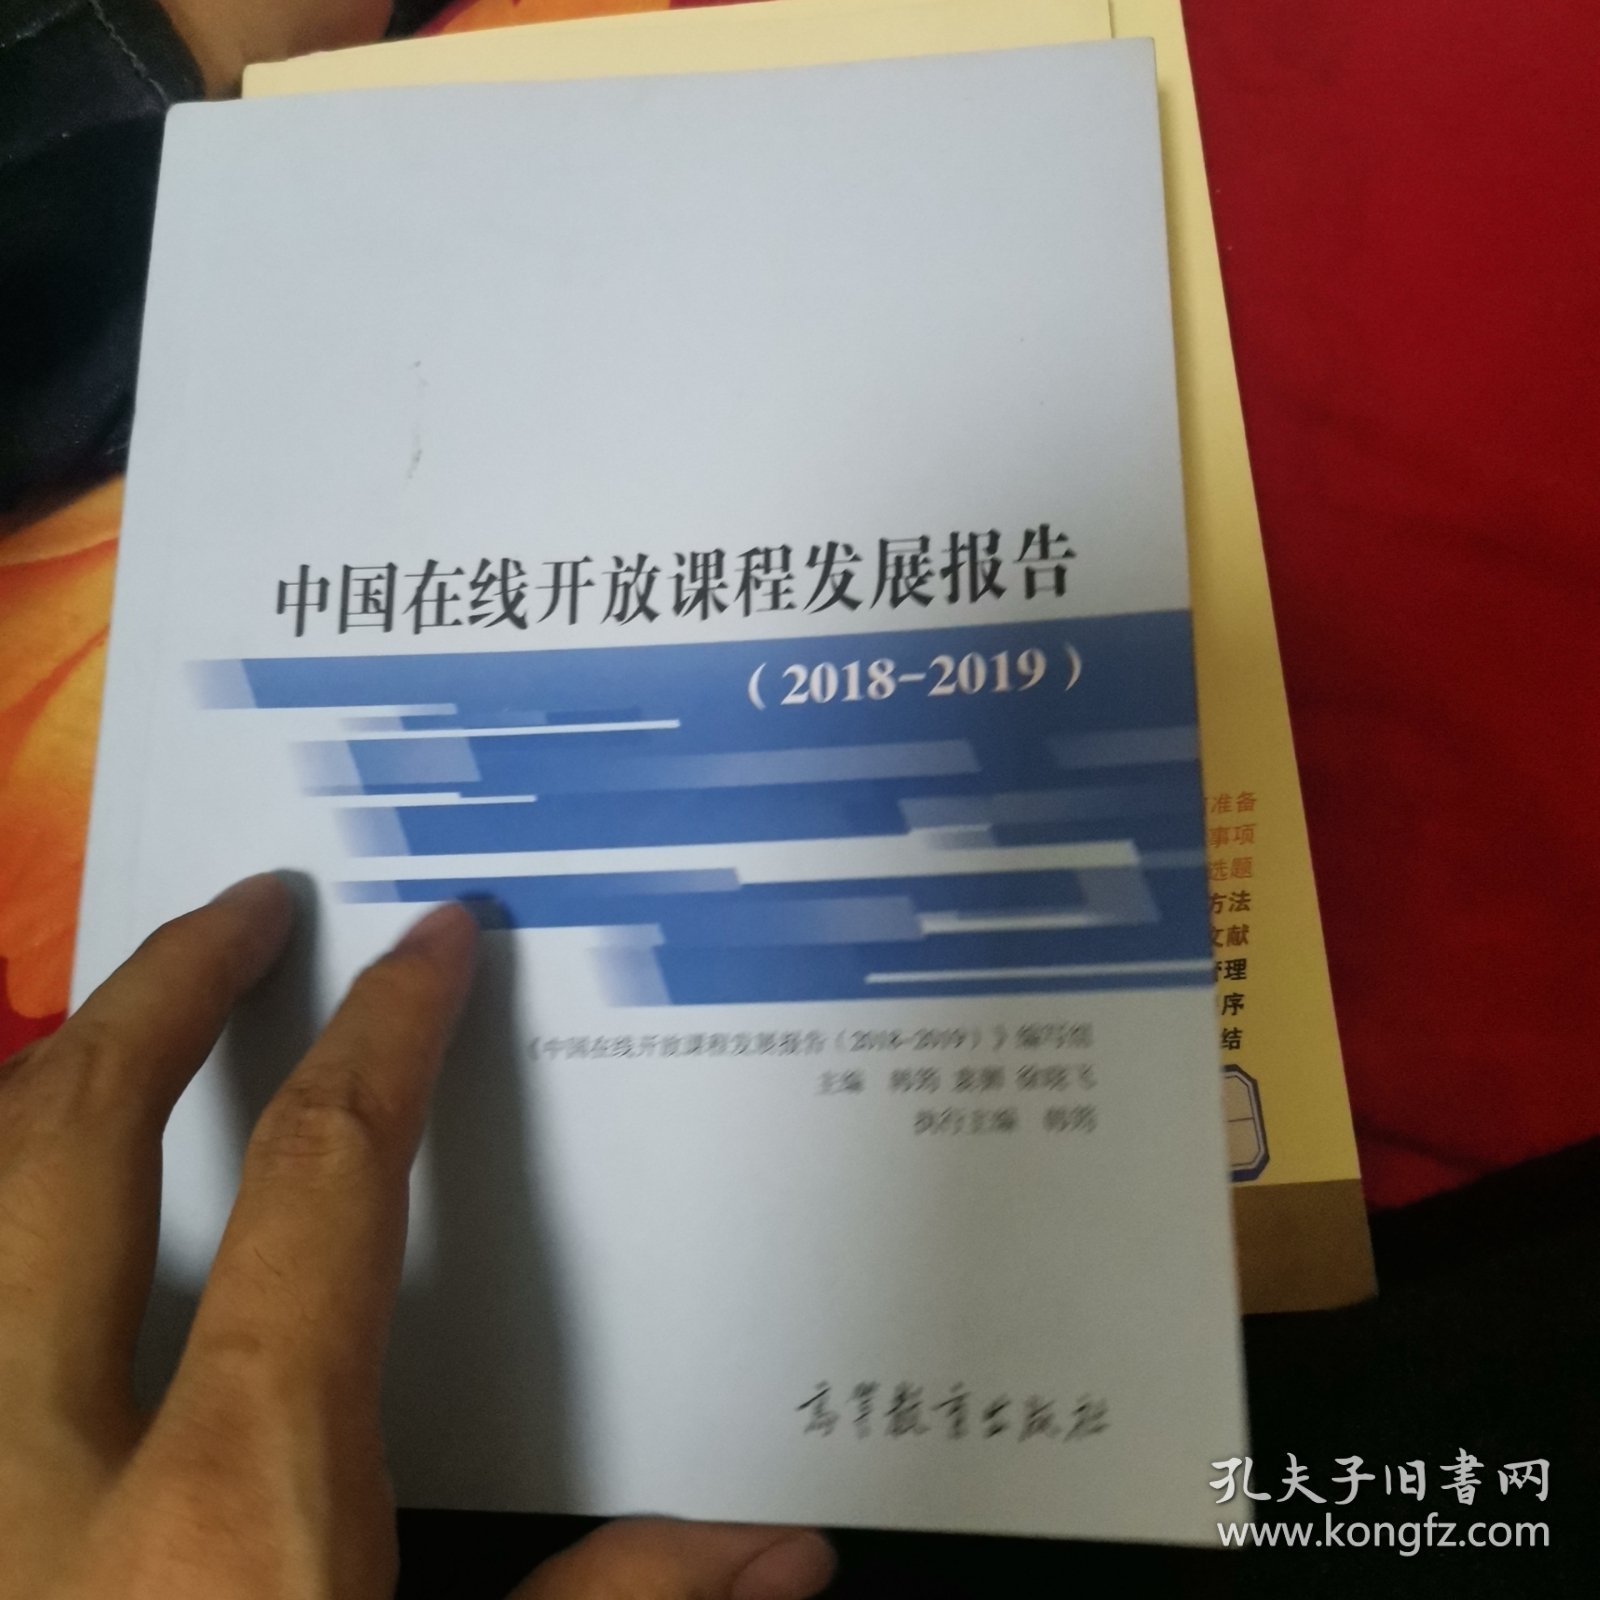 中国在线开放课程发展报告（2018-2019）